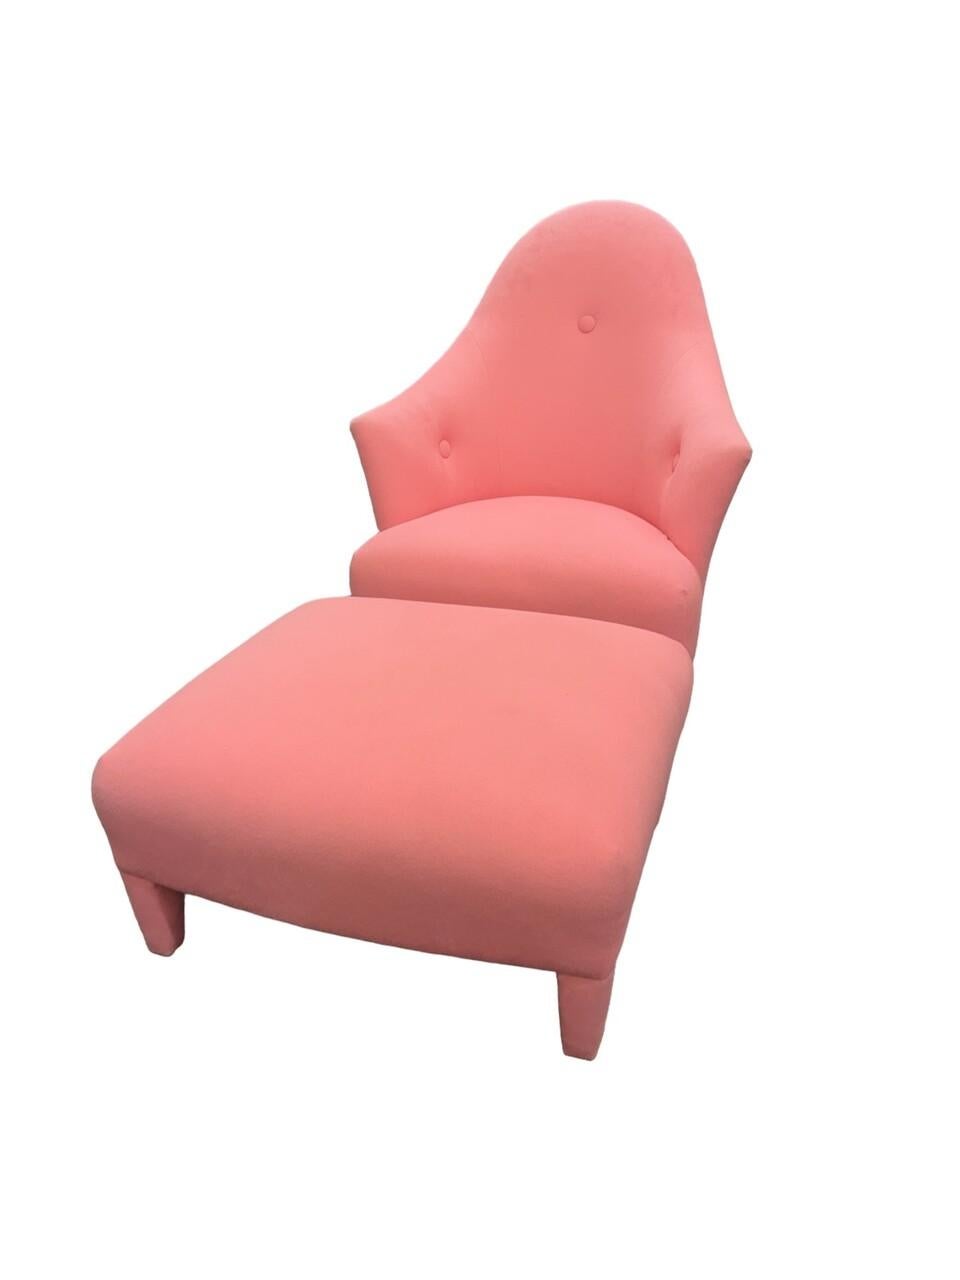 La chaise et l'ottoman John Hutton for Donghia, de couleur rose, exhalent une élégance intemporelle et une sophistication moderne. Fabriqué avec une attention méticuleuse aux détails, le matériau acrylique transparent crée un effet visuel